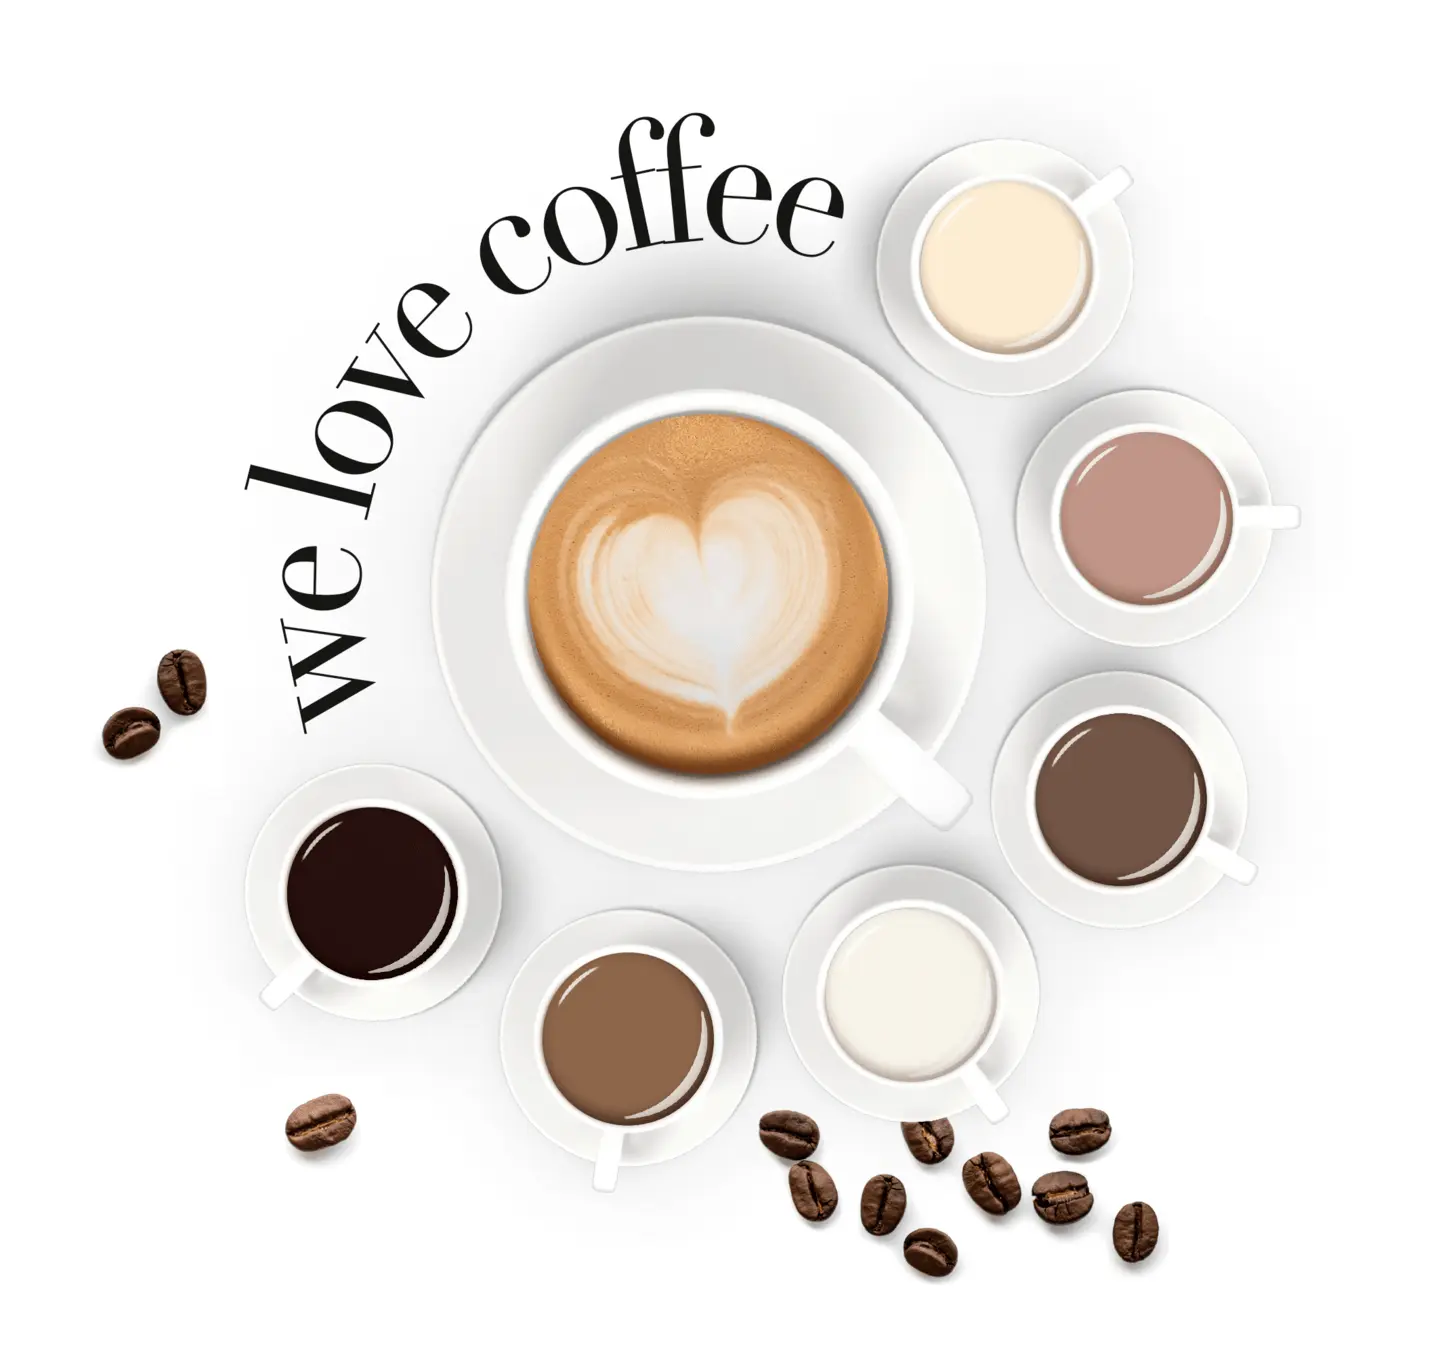 LCN RECOLUTION Advanced Soak off colour polish latte macchiato (785) 10 ml